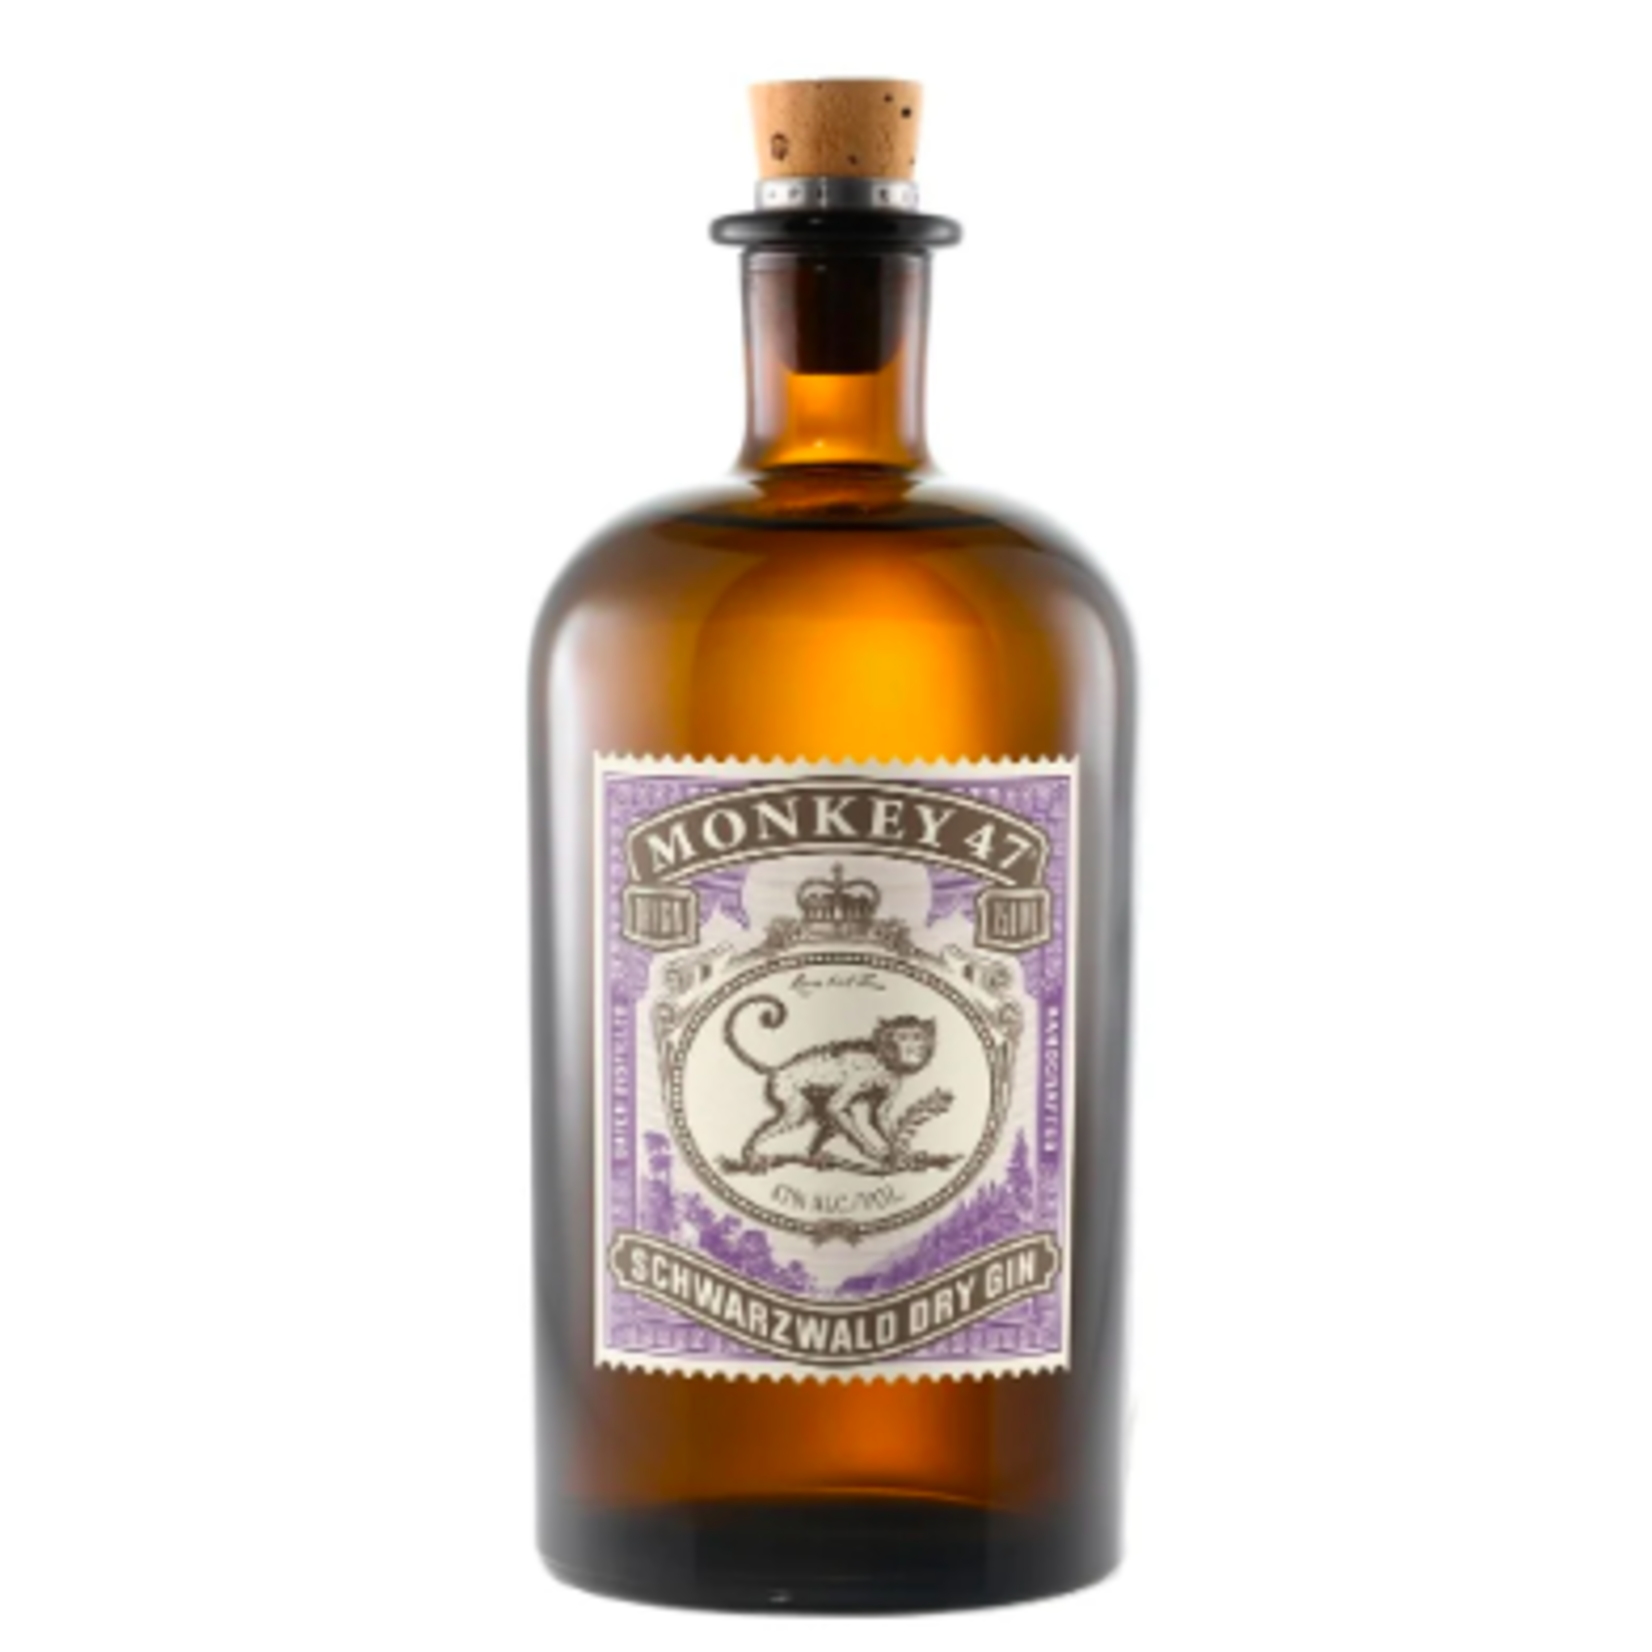 Black Forest Distillers, Monkey 47 Schwarzwald Dry Gin